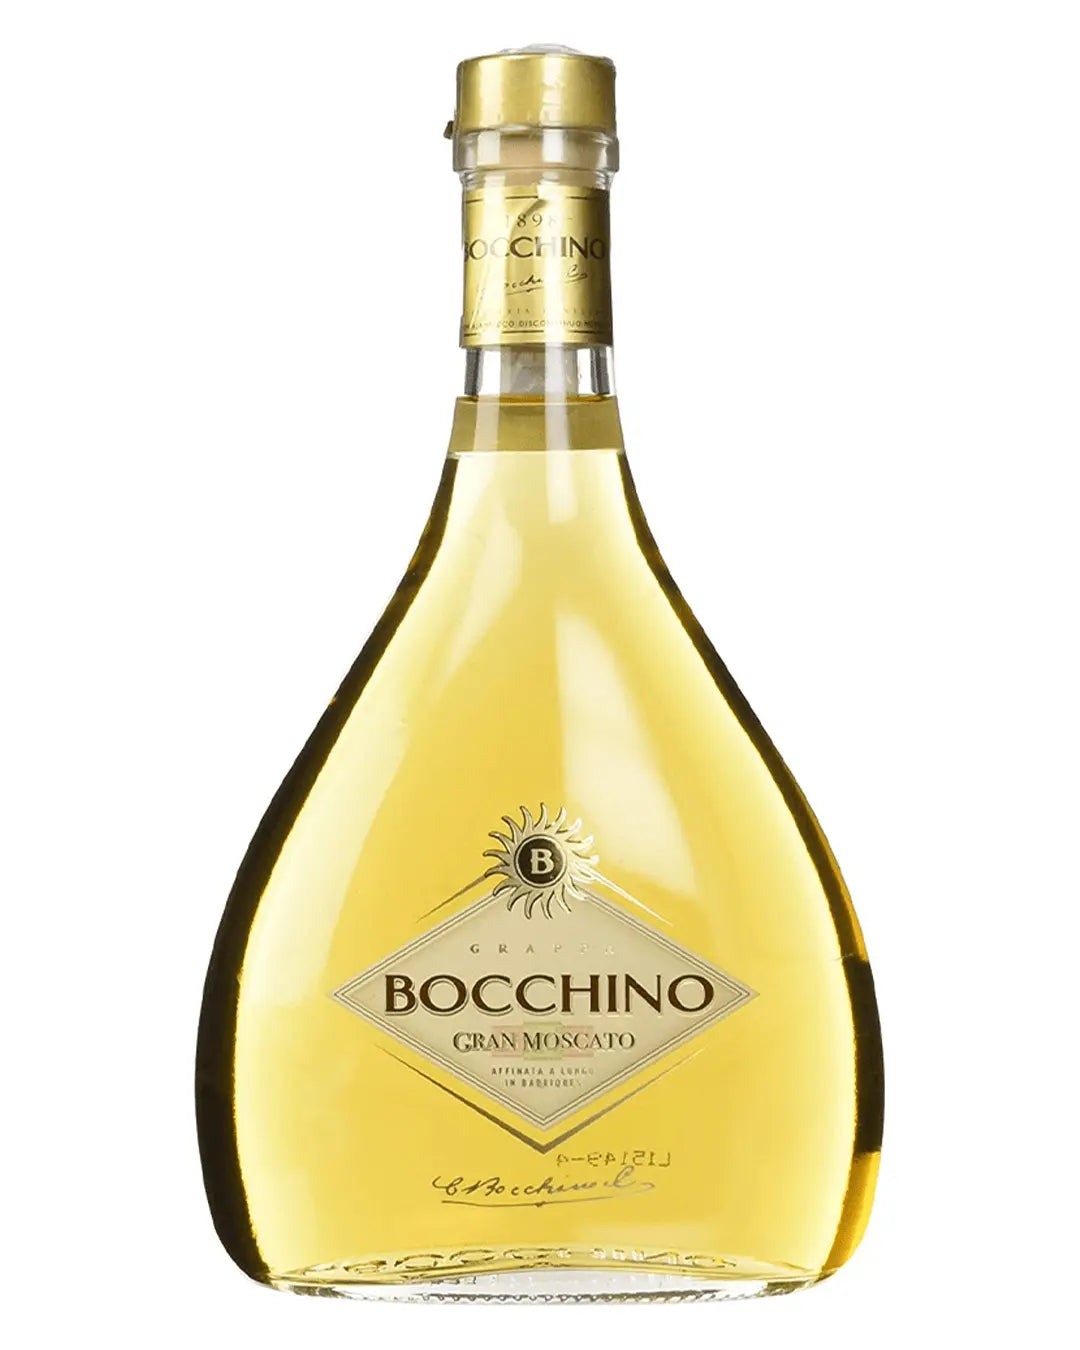 Bocchino Gran Moscato Stravecchia Grappa, 70 cl Liqueurs & Other Spirits 8002600007573